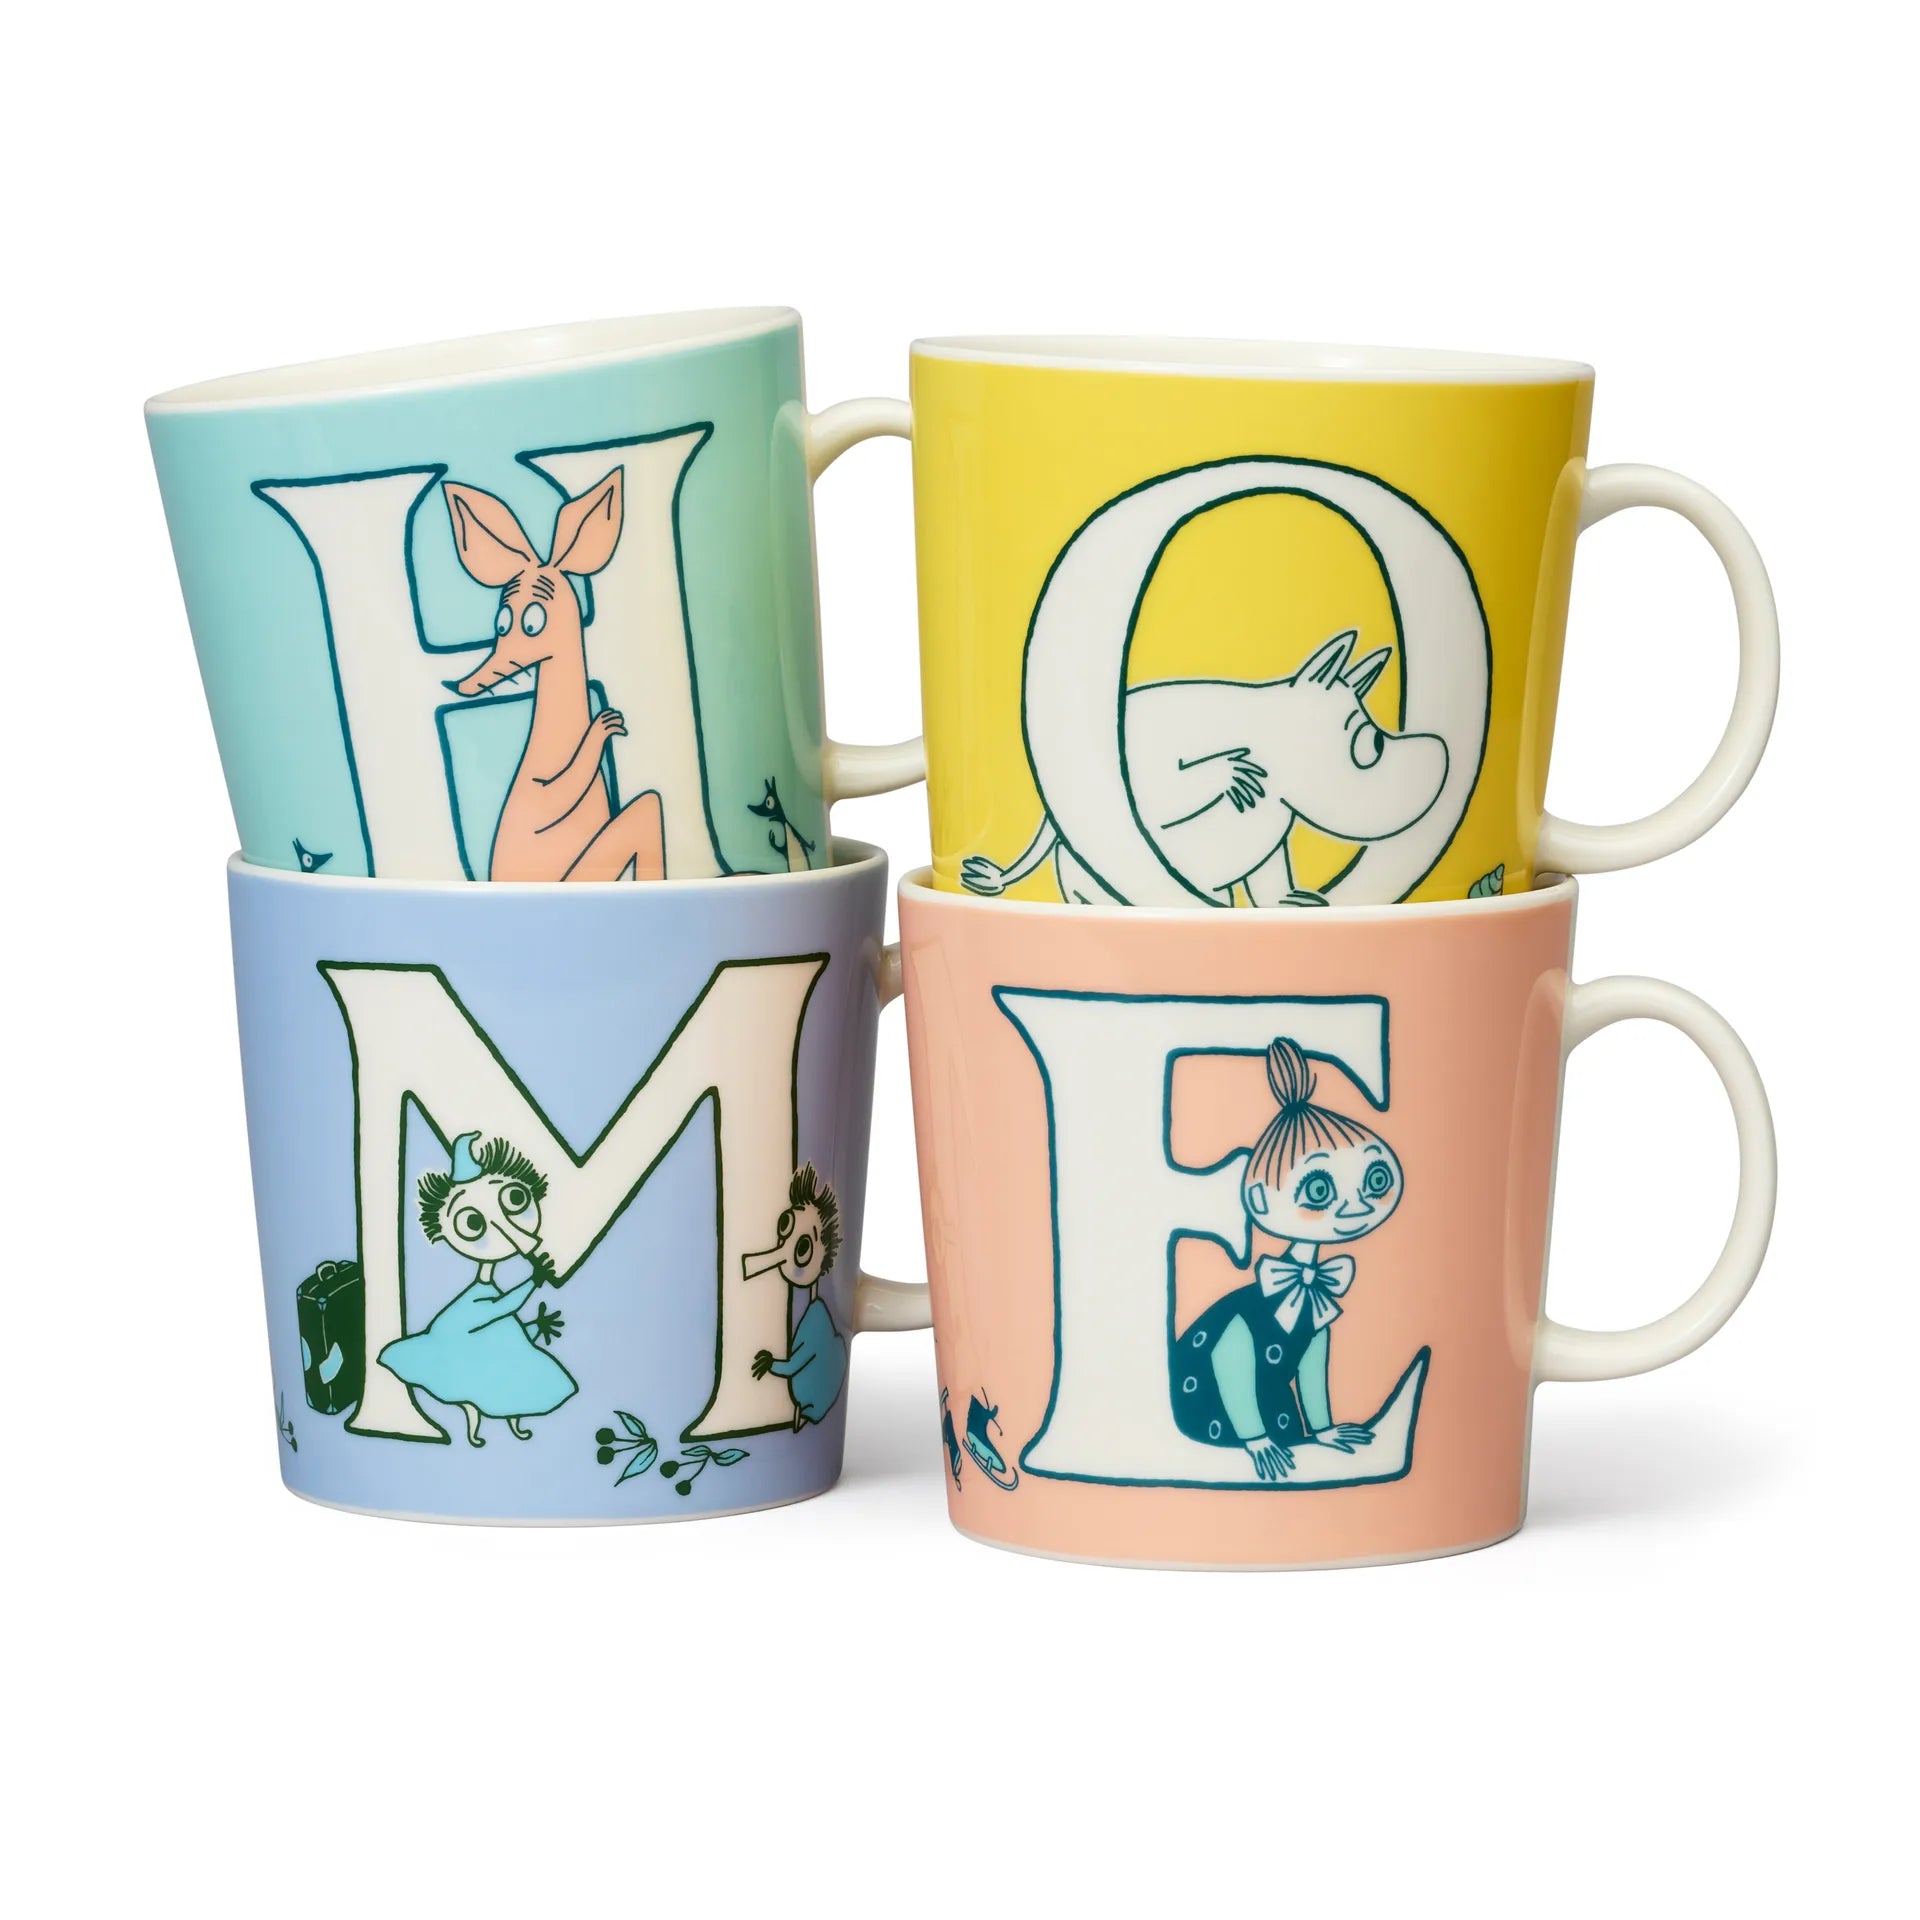 Moomin mug special LARGE 400ml ABC Moomin mug 40 cl H